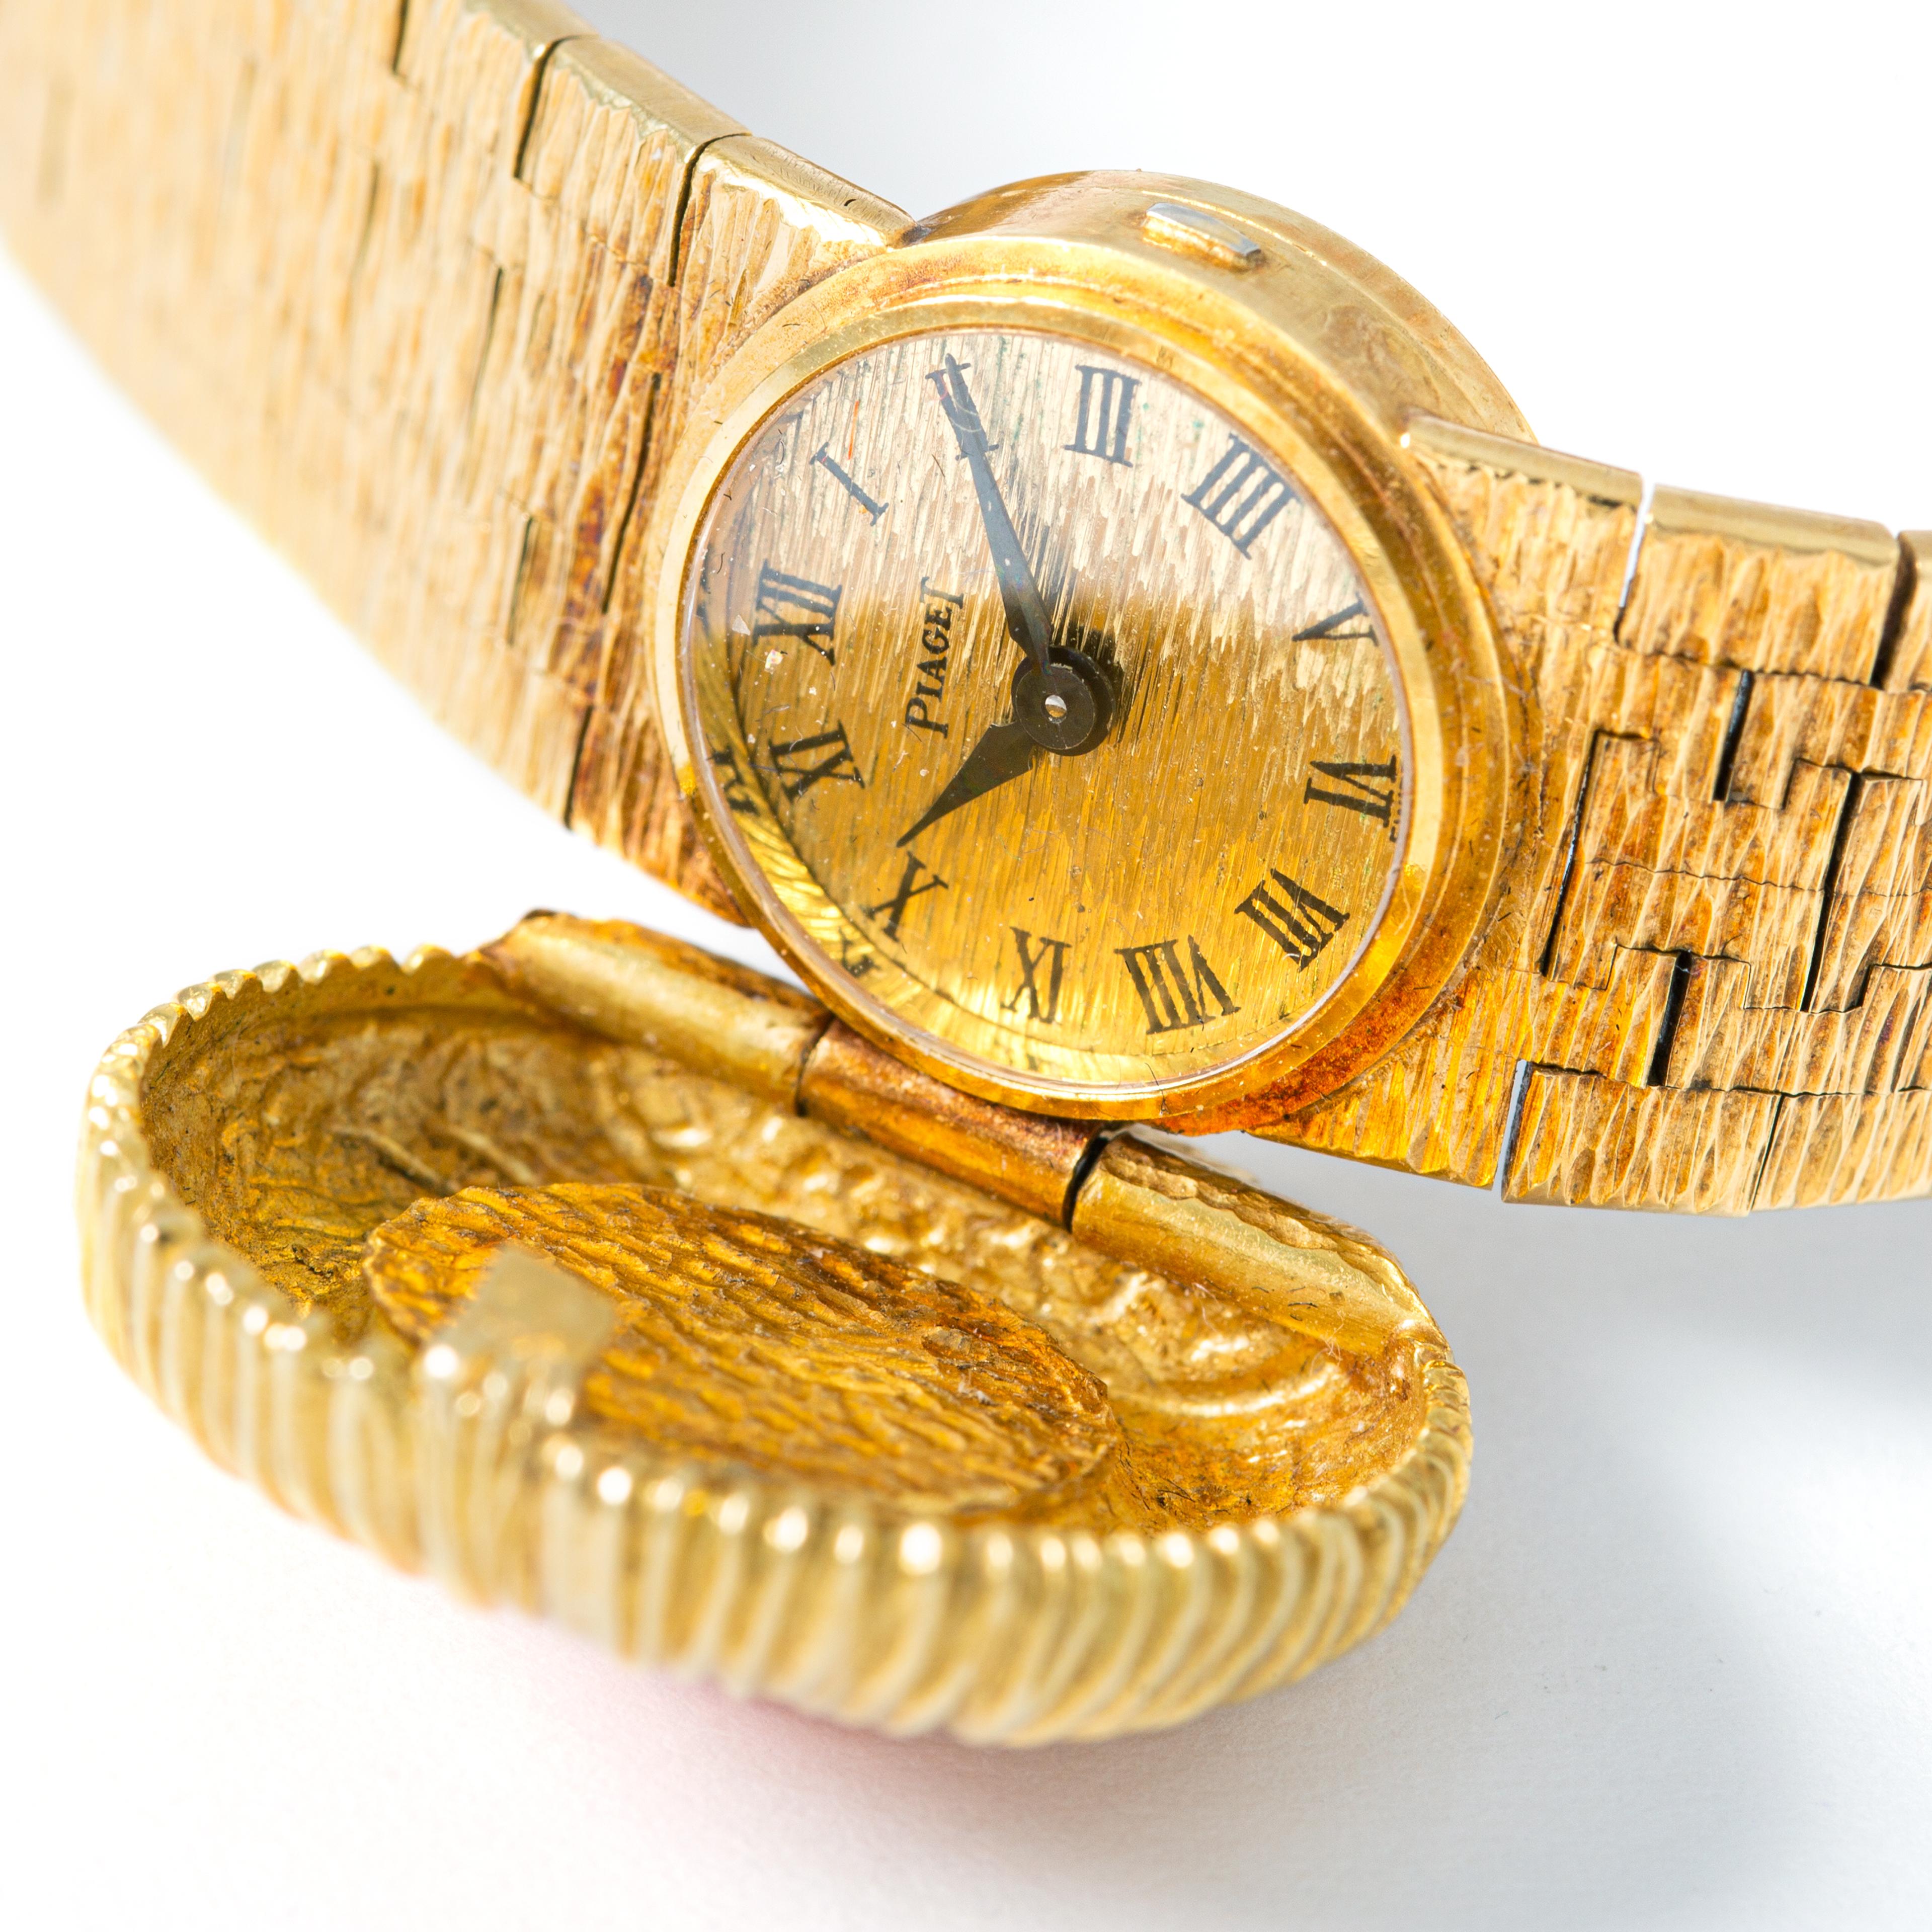 Piaget Armbanduhr aus 18 K Gelbgold mit Koralle in der Mitte. 
Piaget. Circa 1960. 
Länge: 17.00 Zentimeter.
Gesamtgewicht: 48,23 Gramm.

Wir übernehmen keine Garantie für das Funktionieren dieser Uhr.